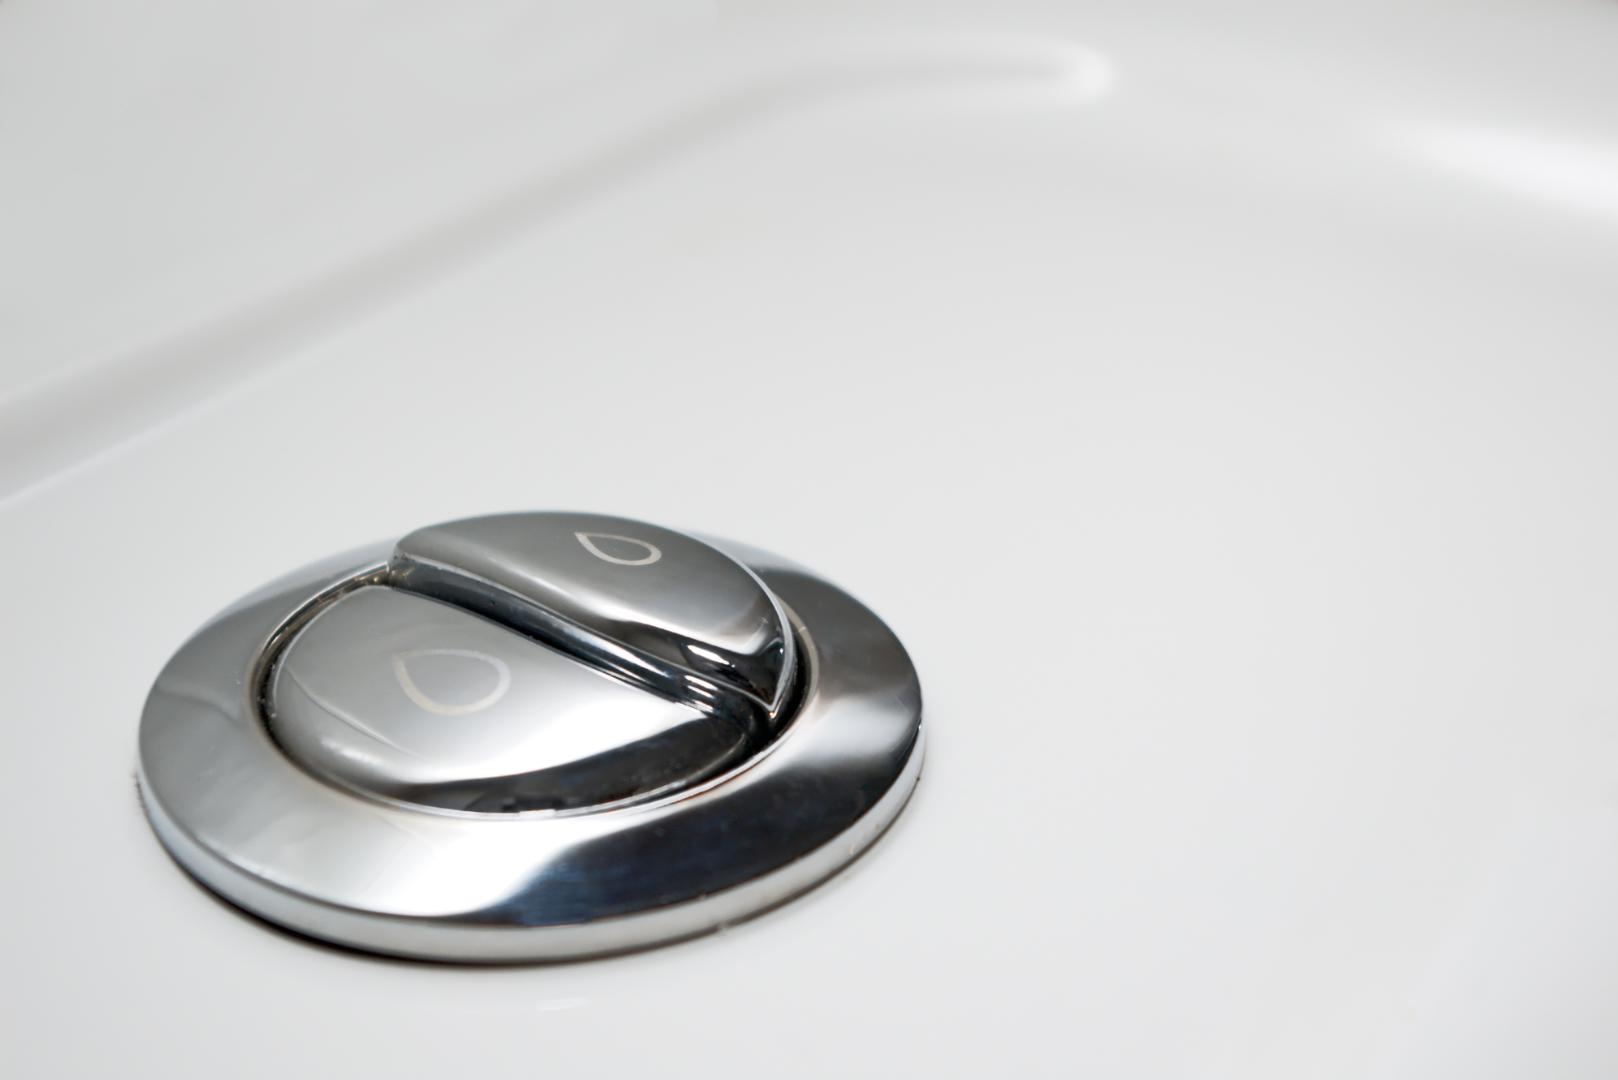 Moderni wc kotlići imaju dva gumba, manji i veći. Iako ste vjerojatno uvijek stiskali nasumično bilo koji ili oba u isto vrijeme i pitali se čemu služi manji, a čemu veći, imamo odgovor. 